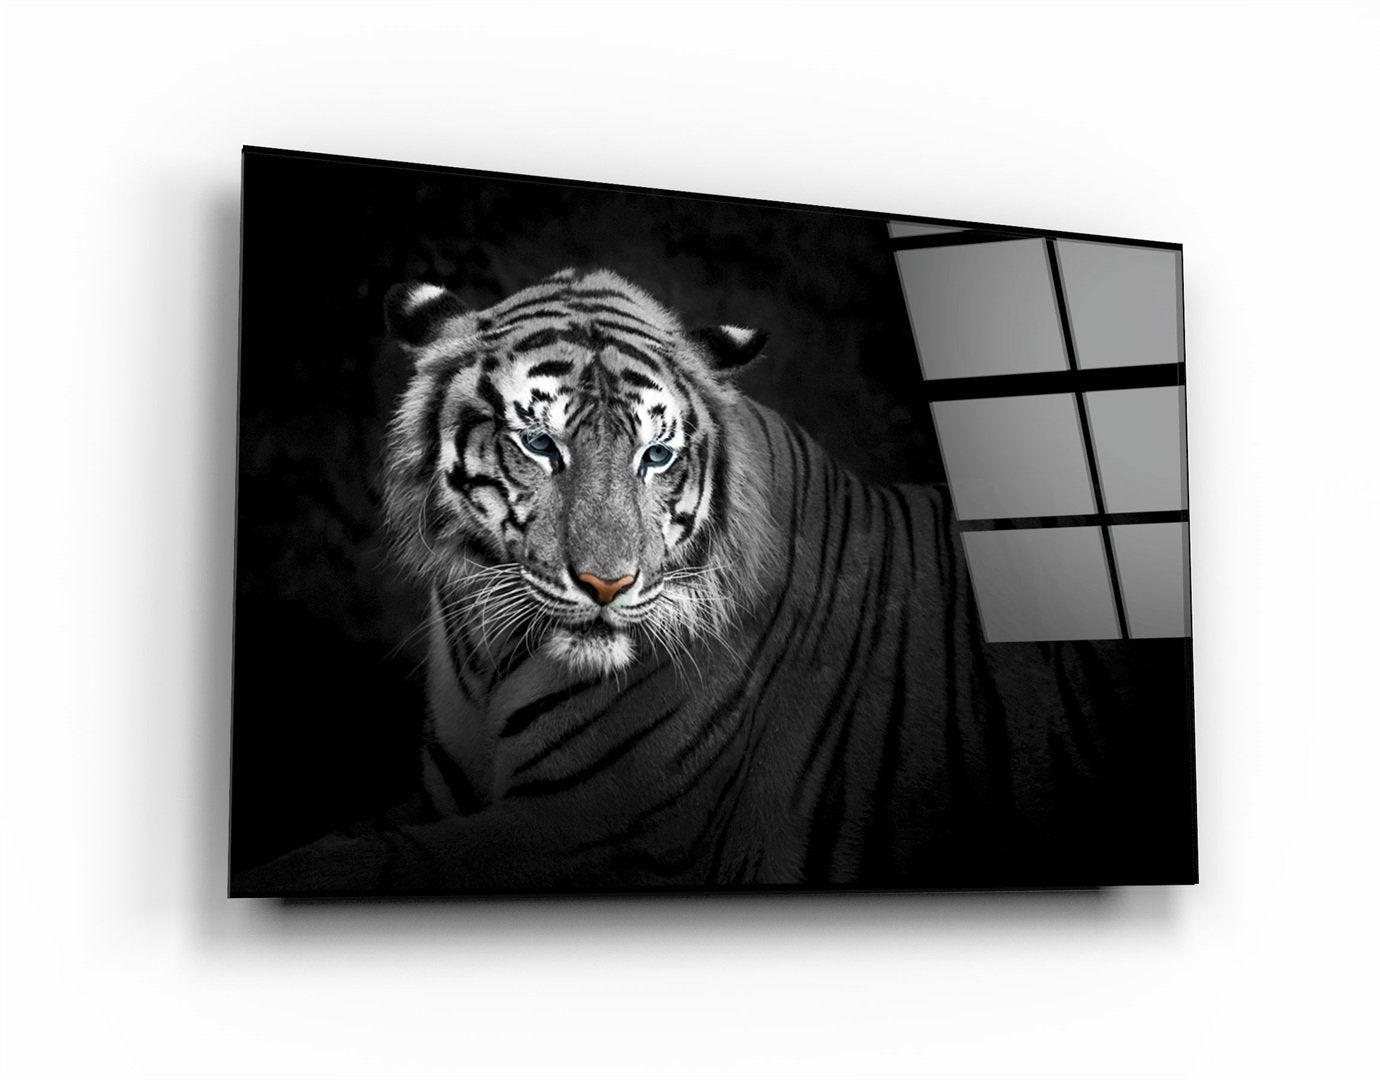 ・"Tiger 4"・Glass Wall Art